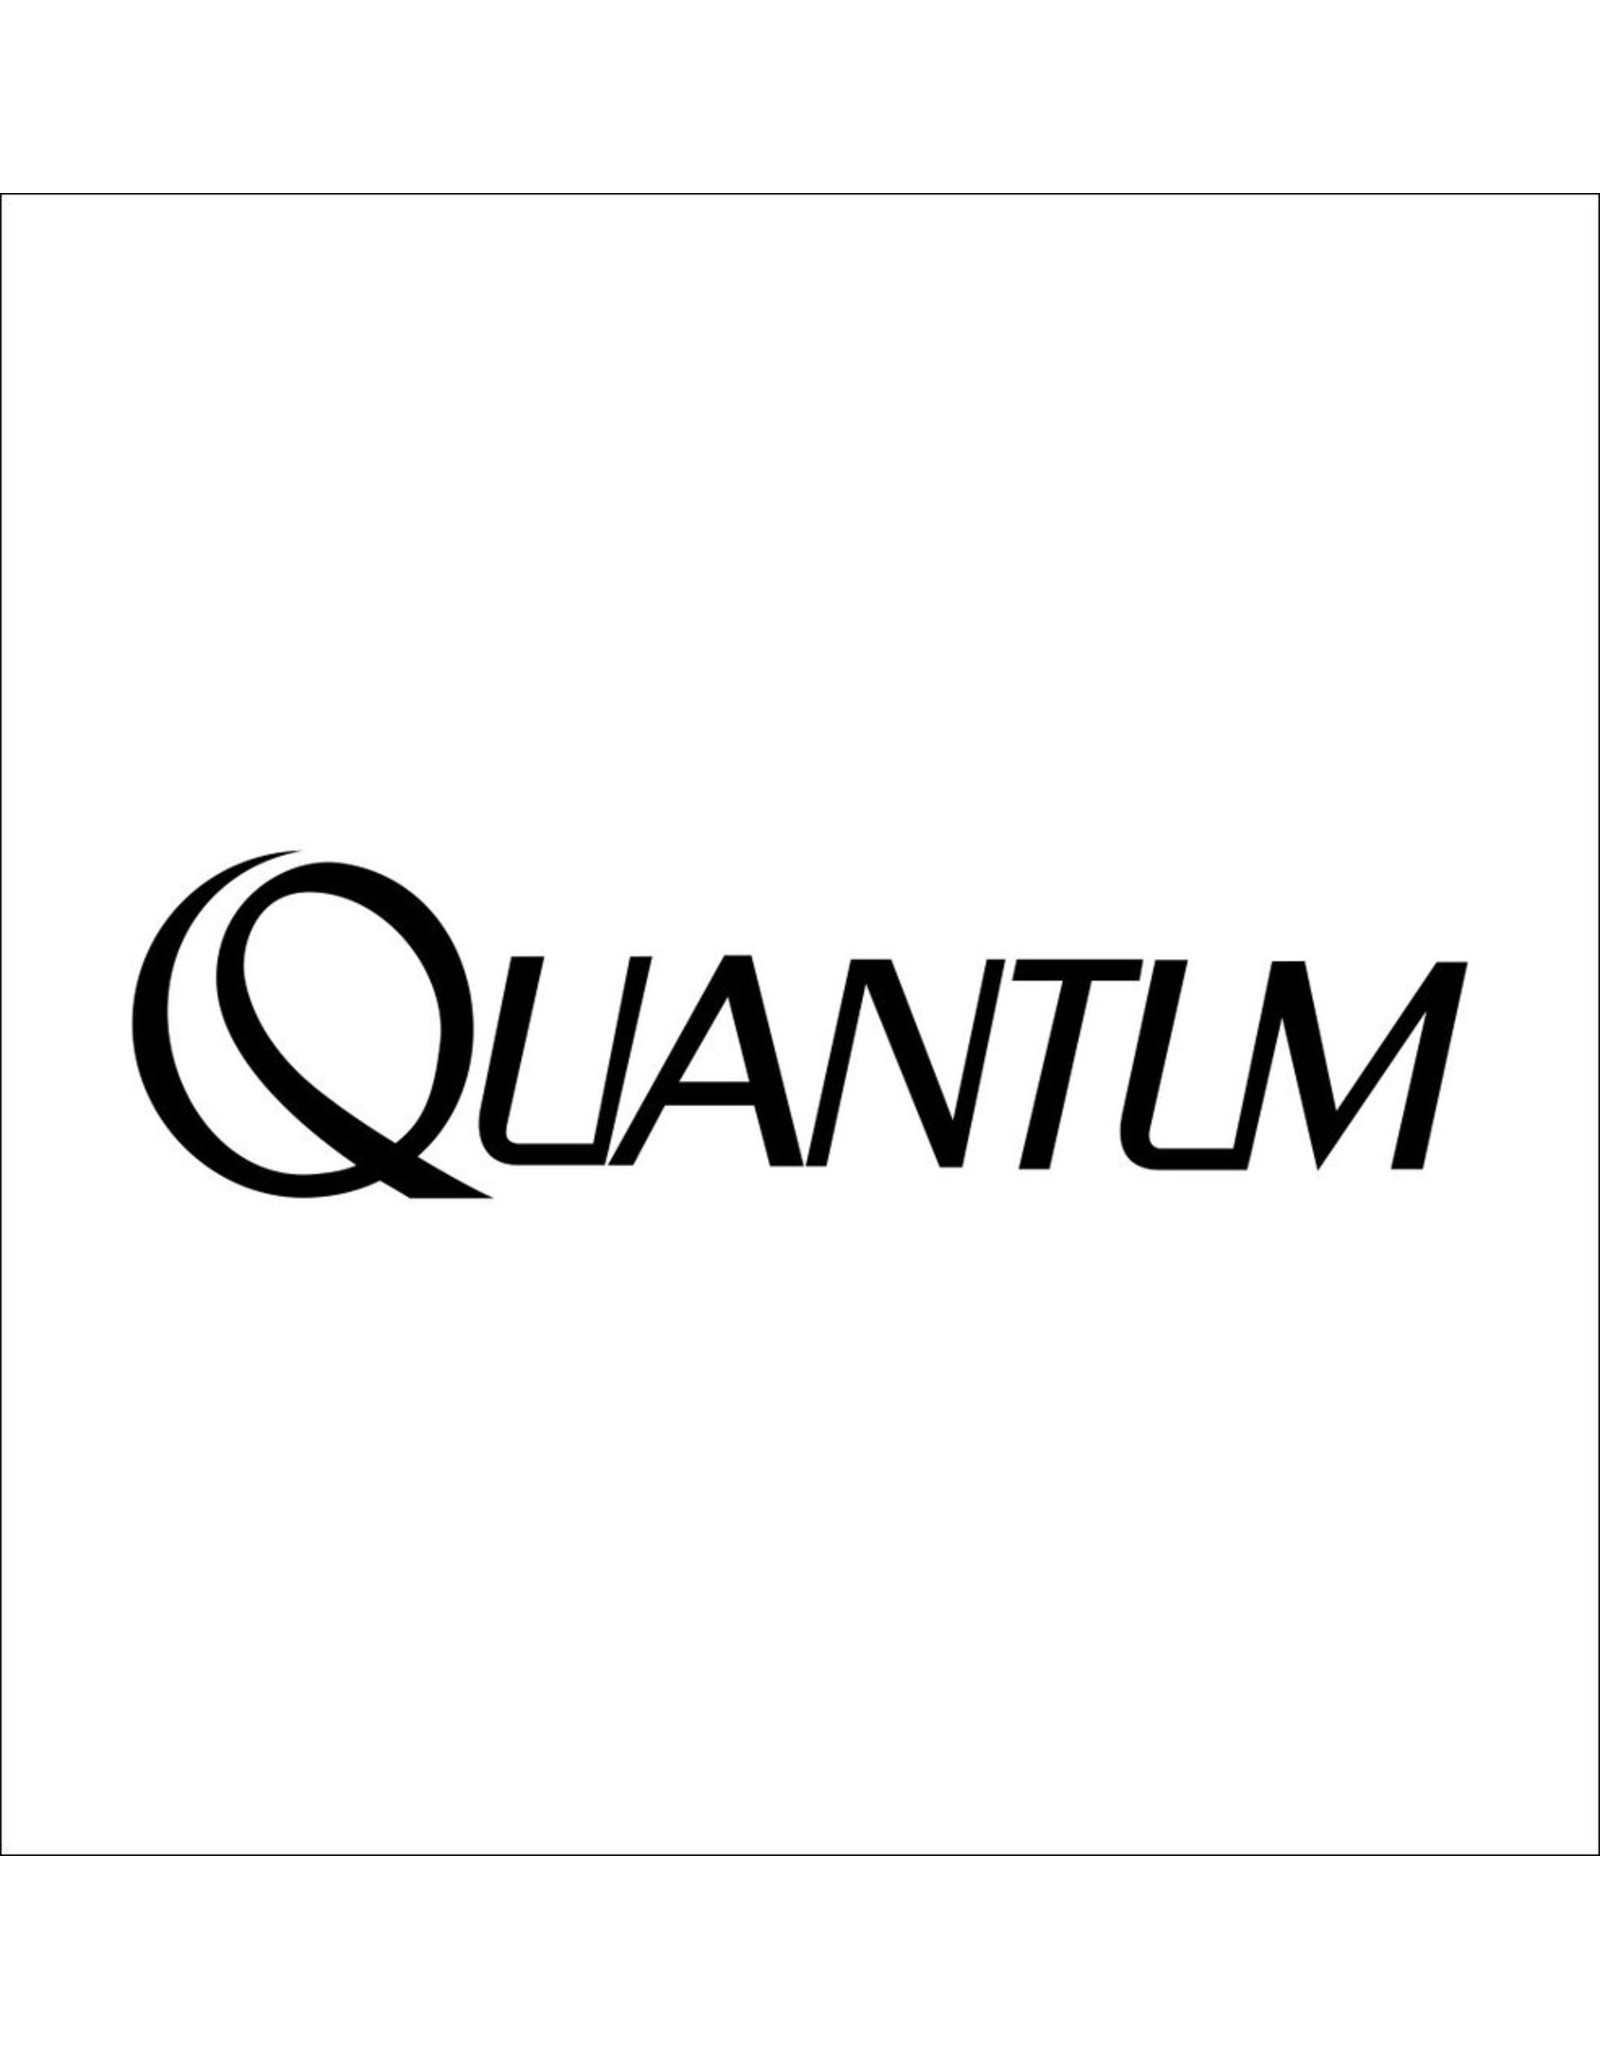 Quantum EX080-01  CLIP RING